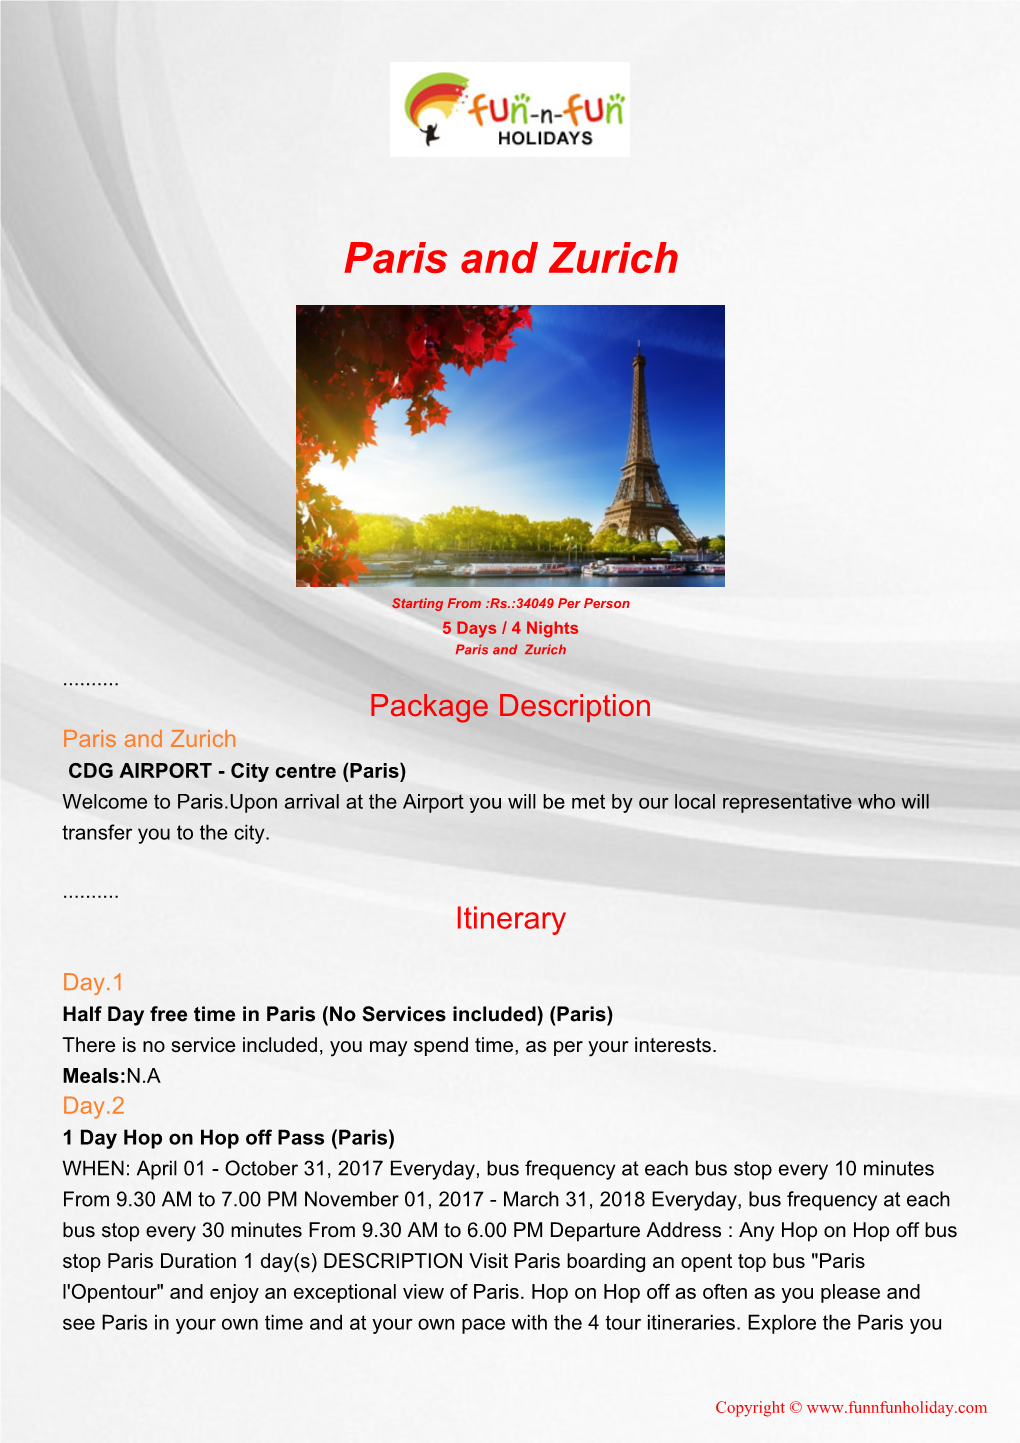 Paris and Zurich